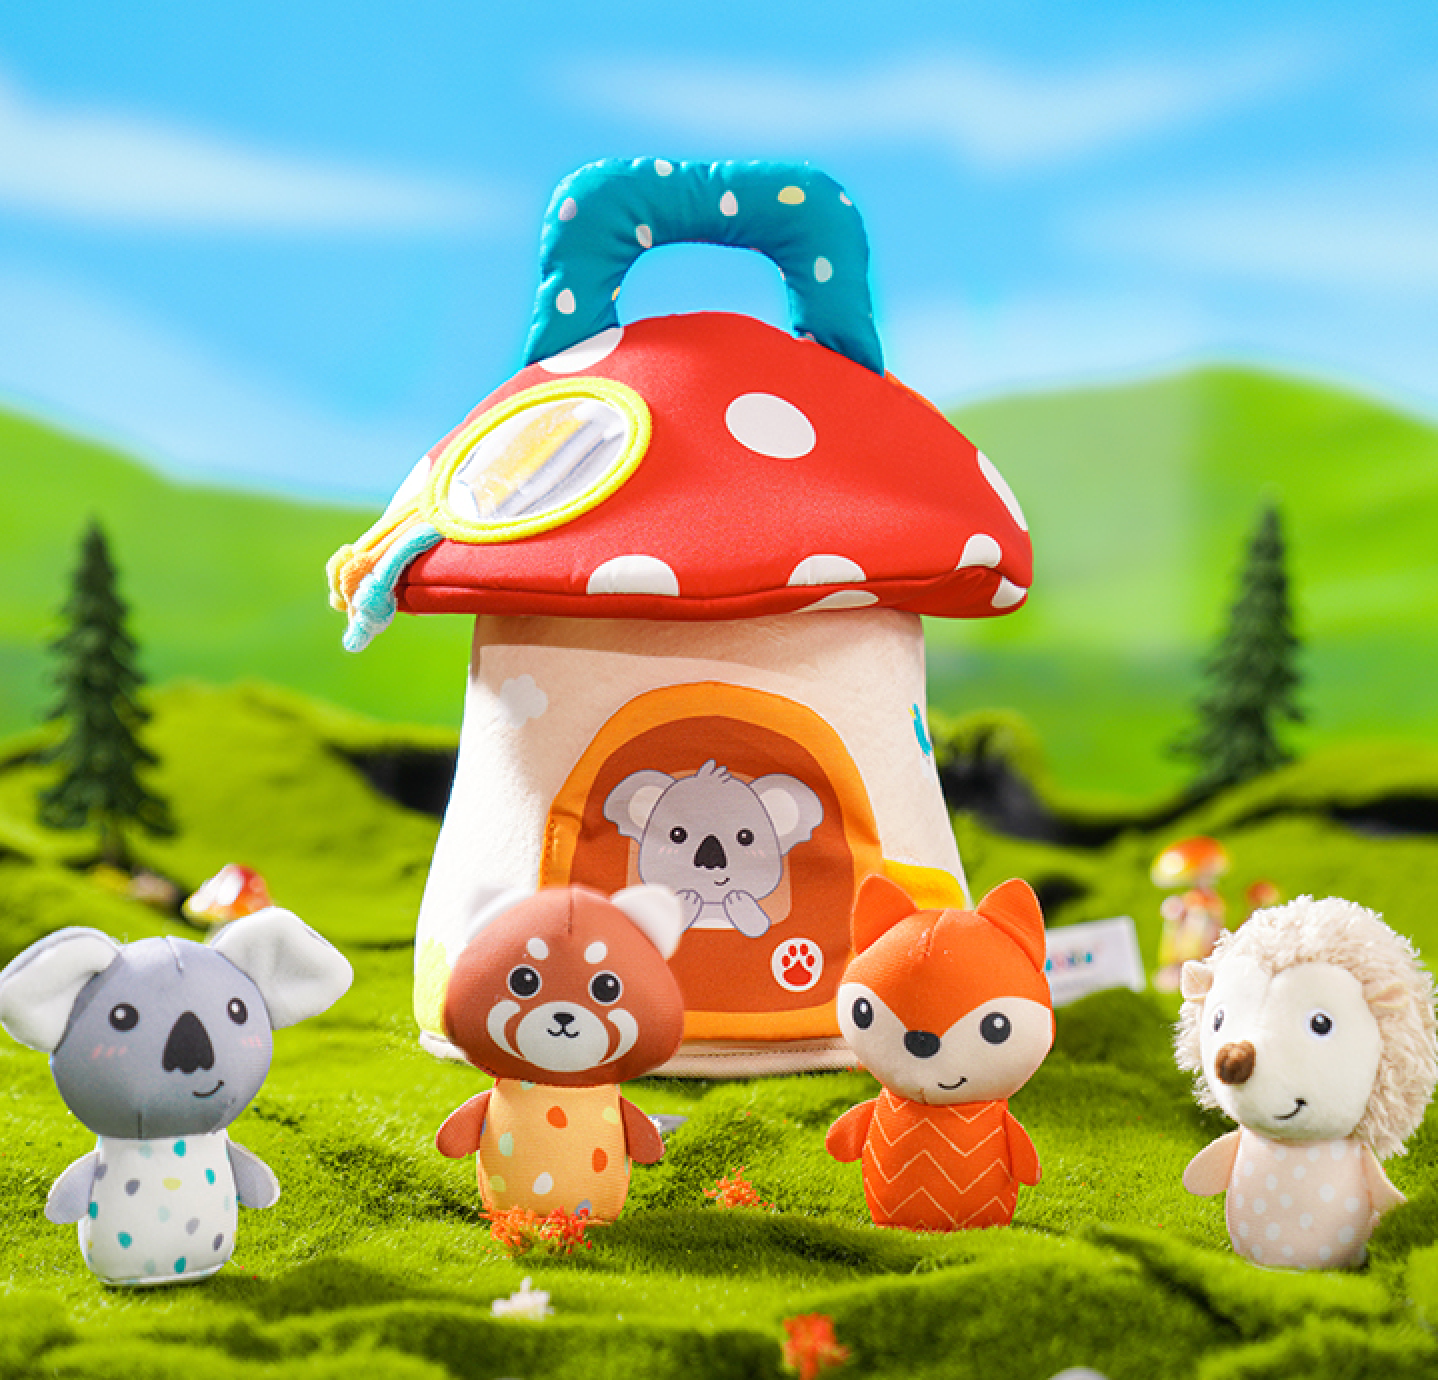 mushroom house toy